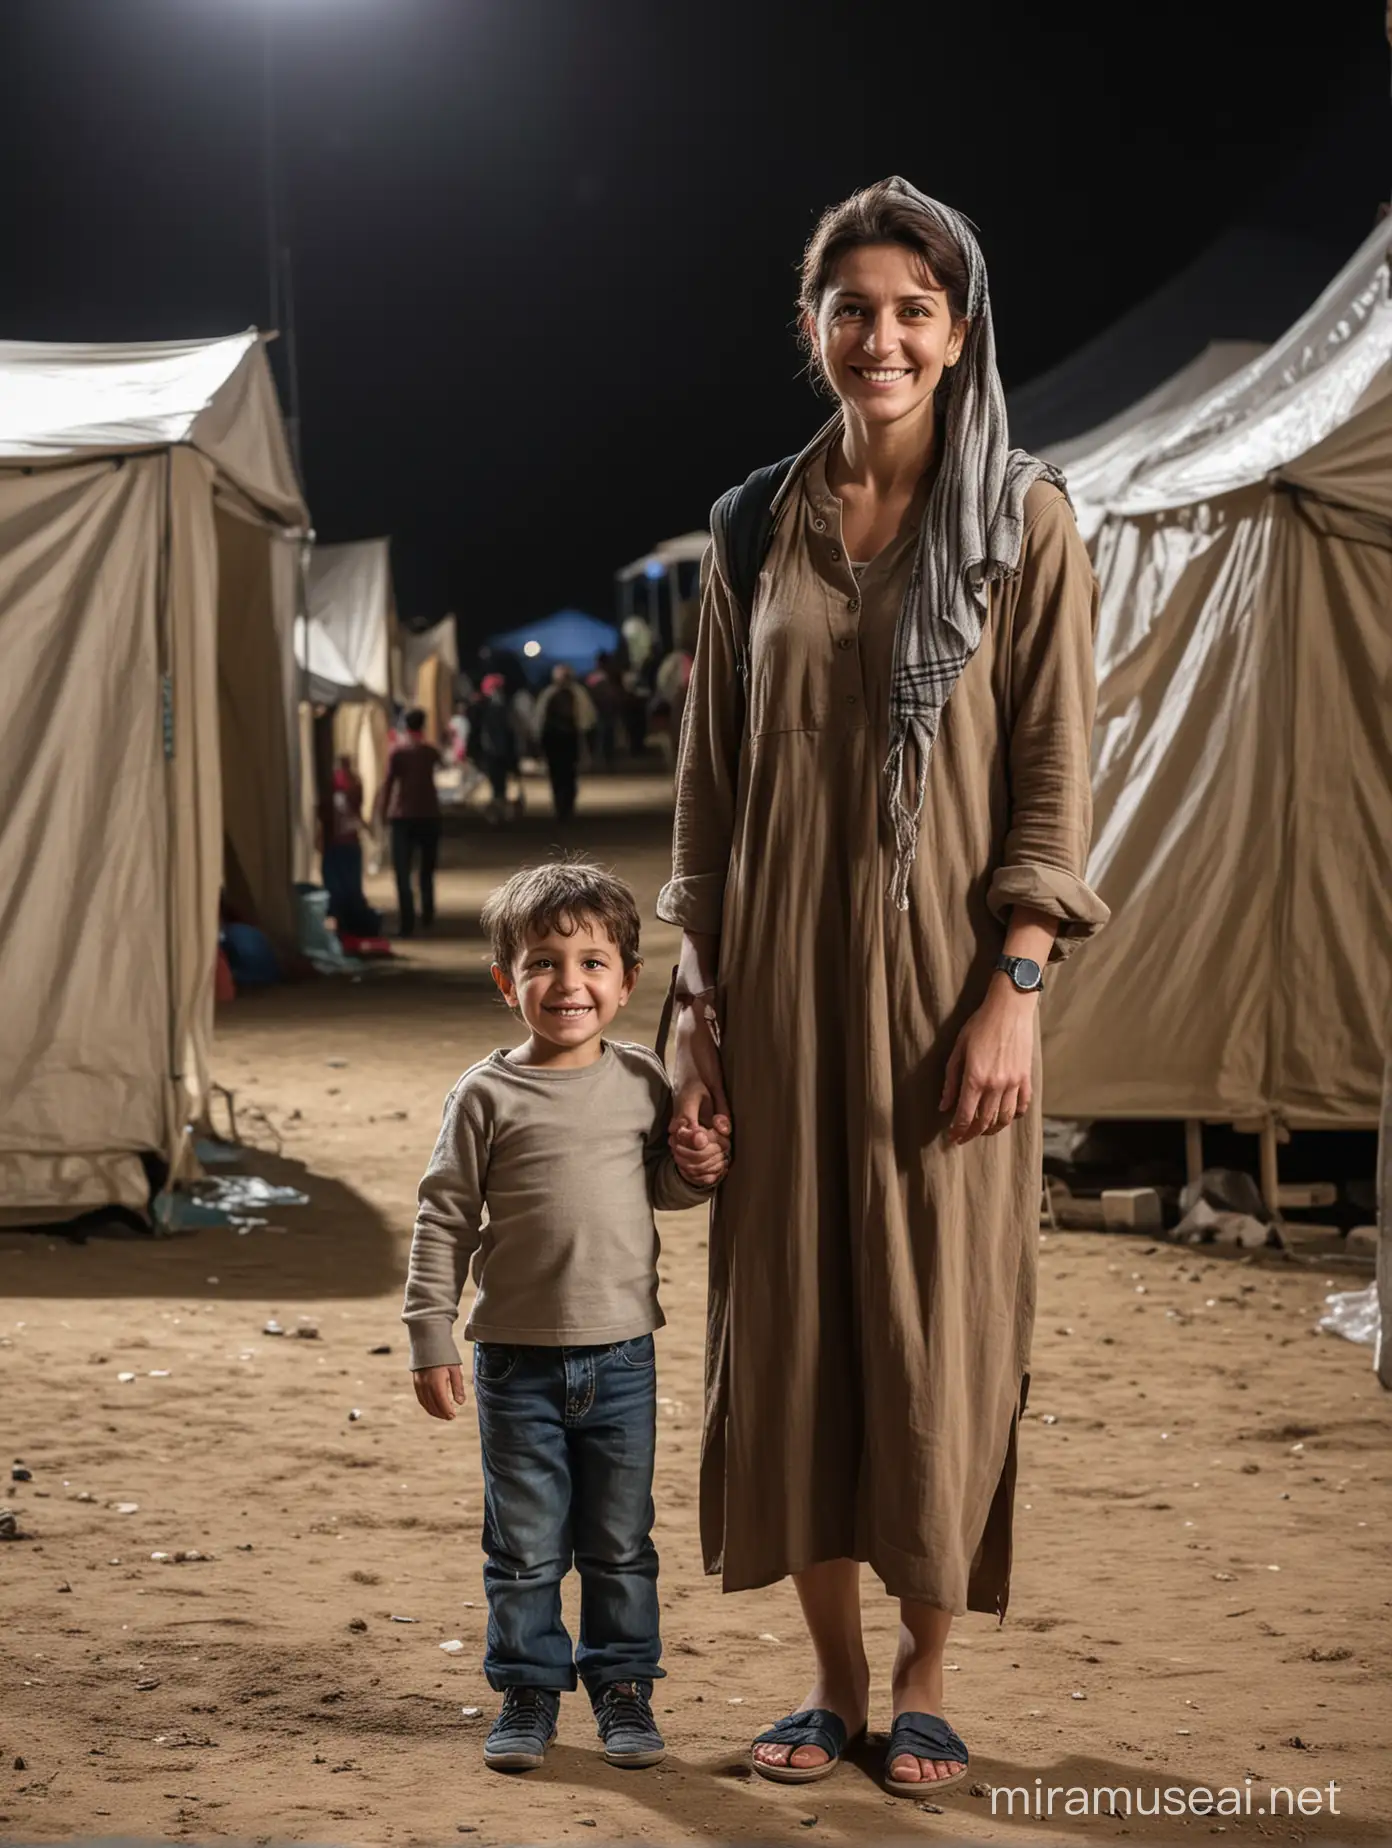 Mulher e menino 5 anos, num palco de teatro, a olhar em frente, corpo inteiro, com um sorriso, cena campo de refugiados com tendas.